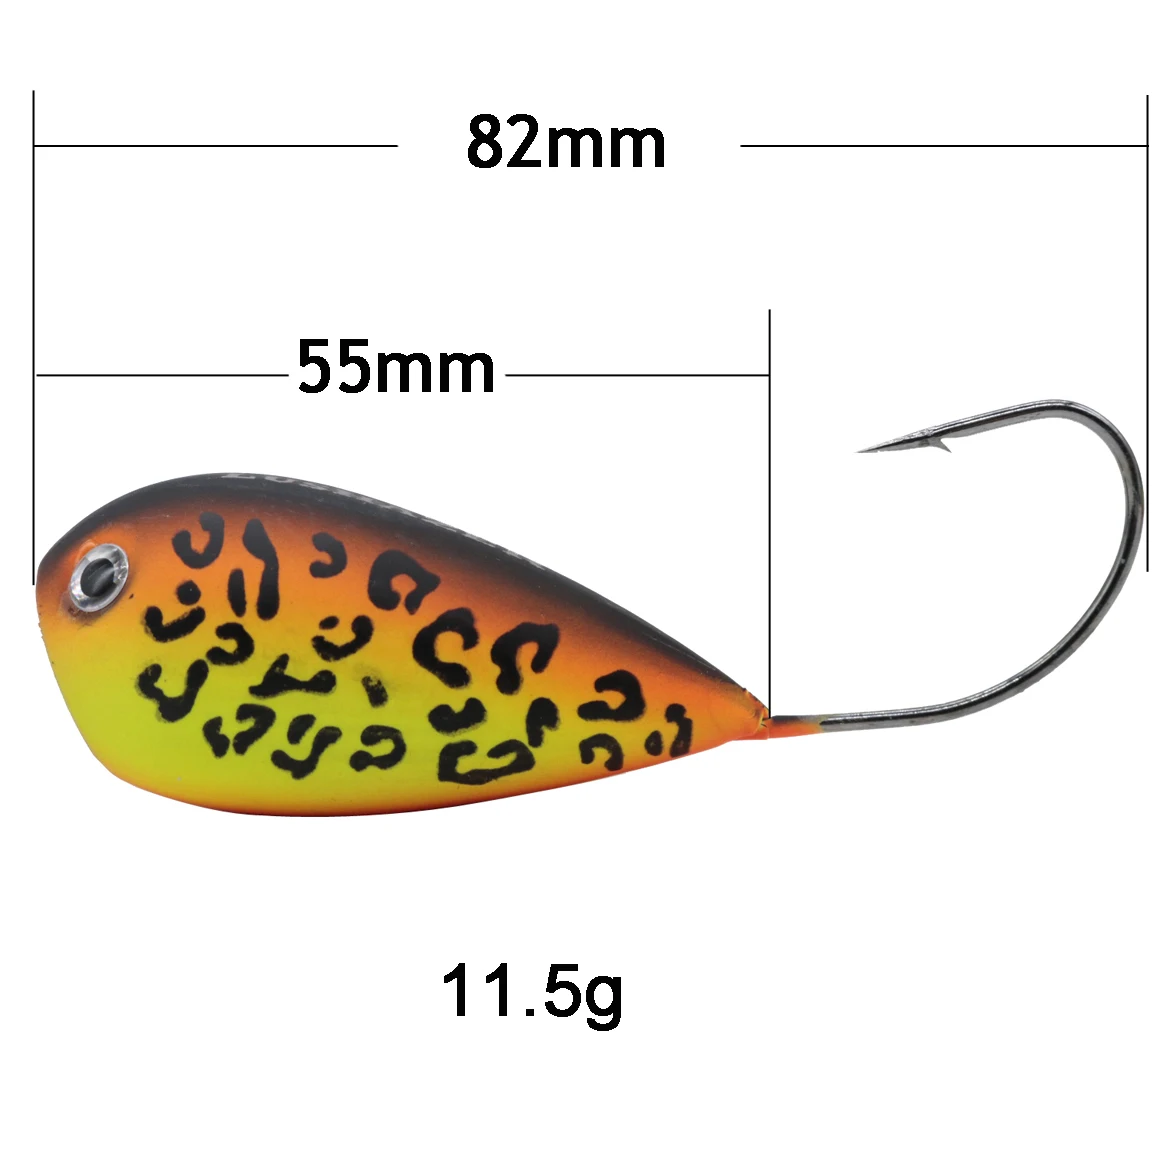 LUSHAZER жесткая приманка для рыбалки приманки для подледной рыбалки 11,5 г 82 мм isca искусственная кренкбейт попер леурр Поппер приманка-топвотер